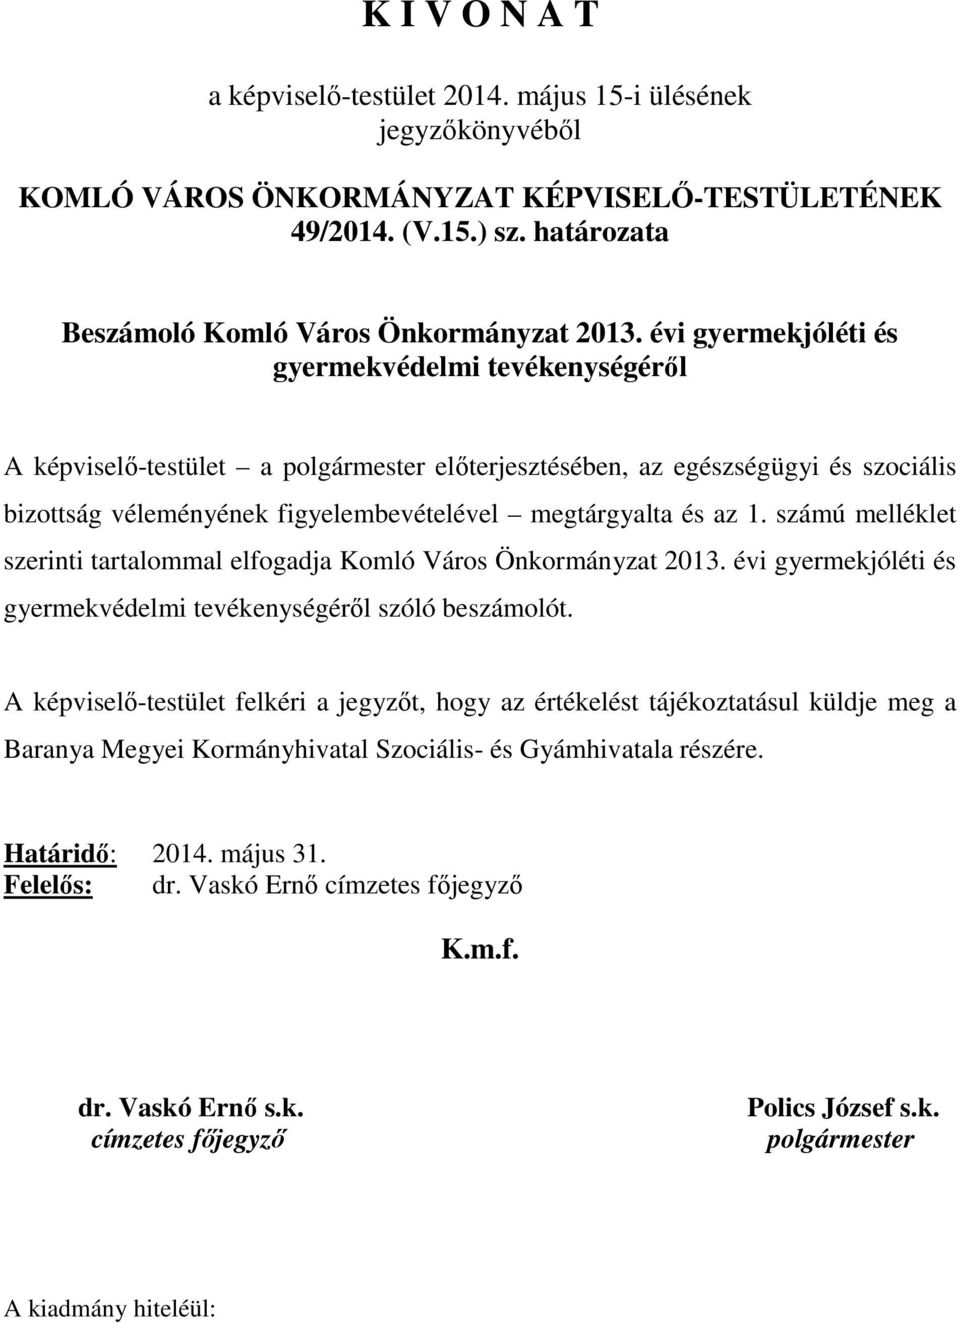 számú melléklet szerinti tartalommal elfogadja Komló Város Önkormányzat 2013. évi gyermekjóléti és gyermekvédelmi tevékenységéről szóló beszámolót.